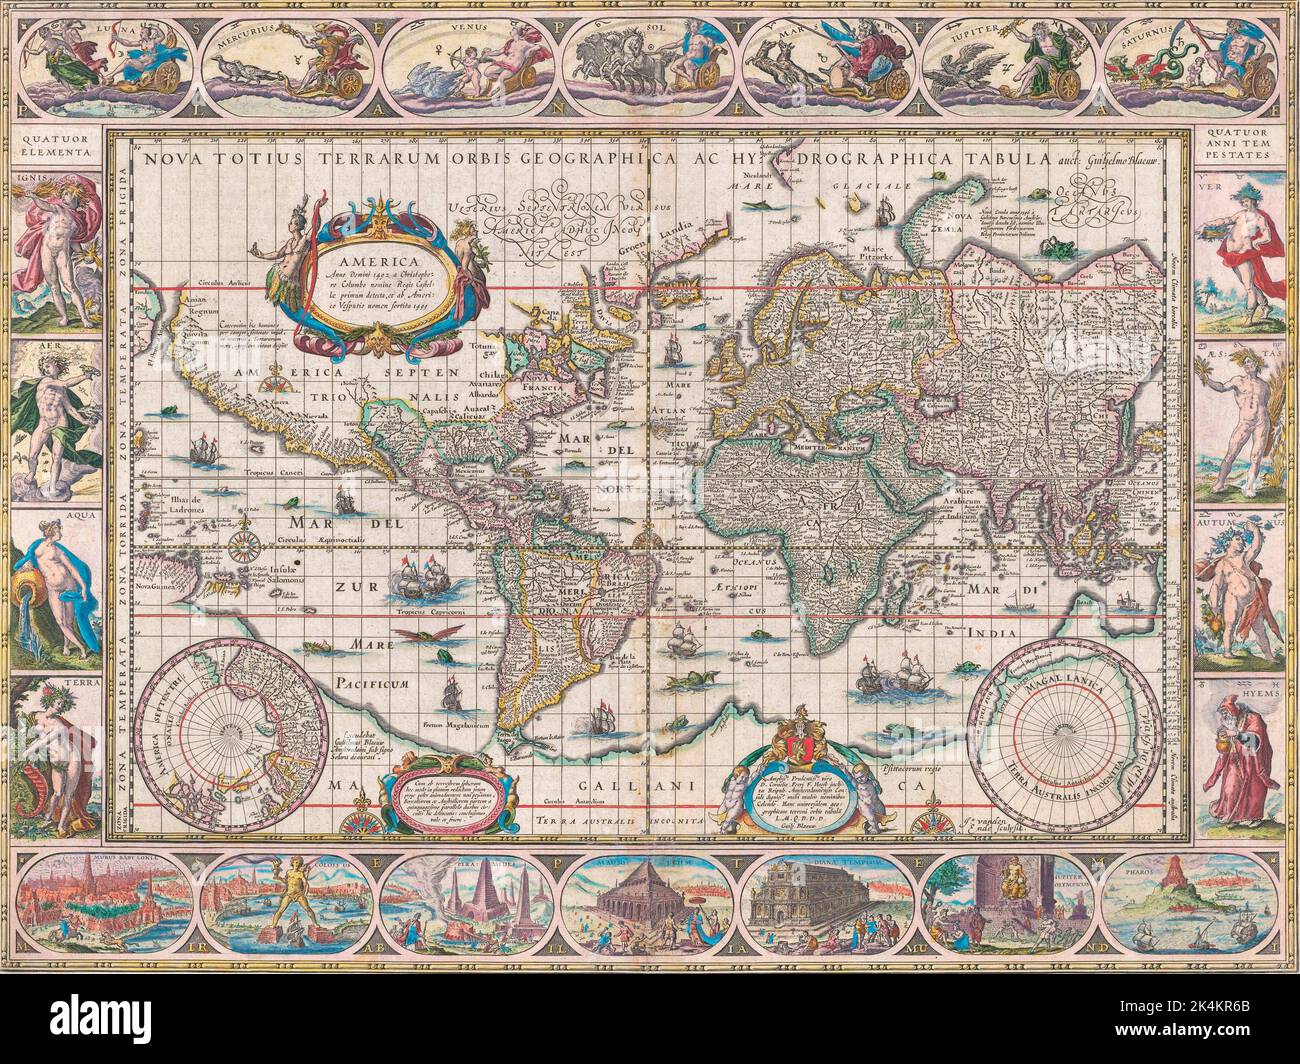 Weltkarte aus dem Jahr 1634/1635 von Willem Blaeu. Nova totius terrarum orbis geographica ac hydrographica tabula. Unten auf der Karte sind Illustrationen der sieben Wunder der antiken Welt zu sehen. Stockfoto